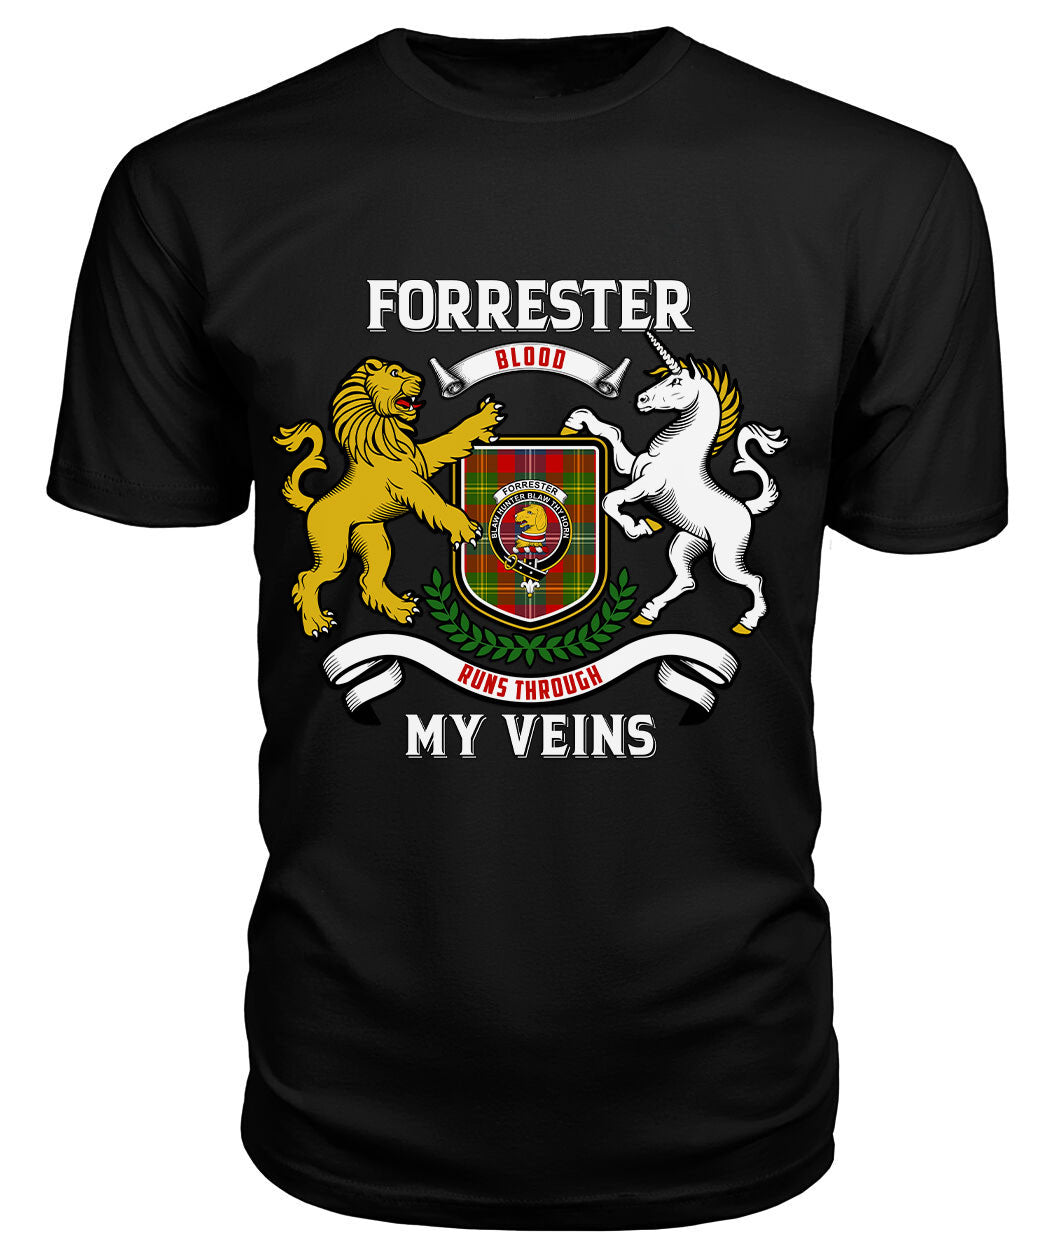 Forrester Tartan Crest 2D T-shirt - Blood Runs Through My Veins Style